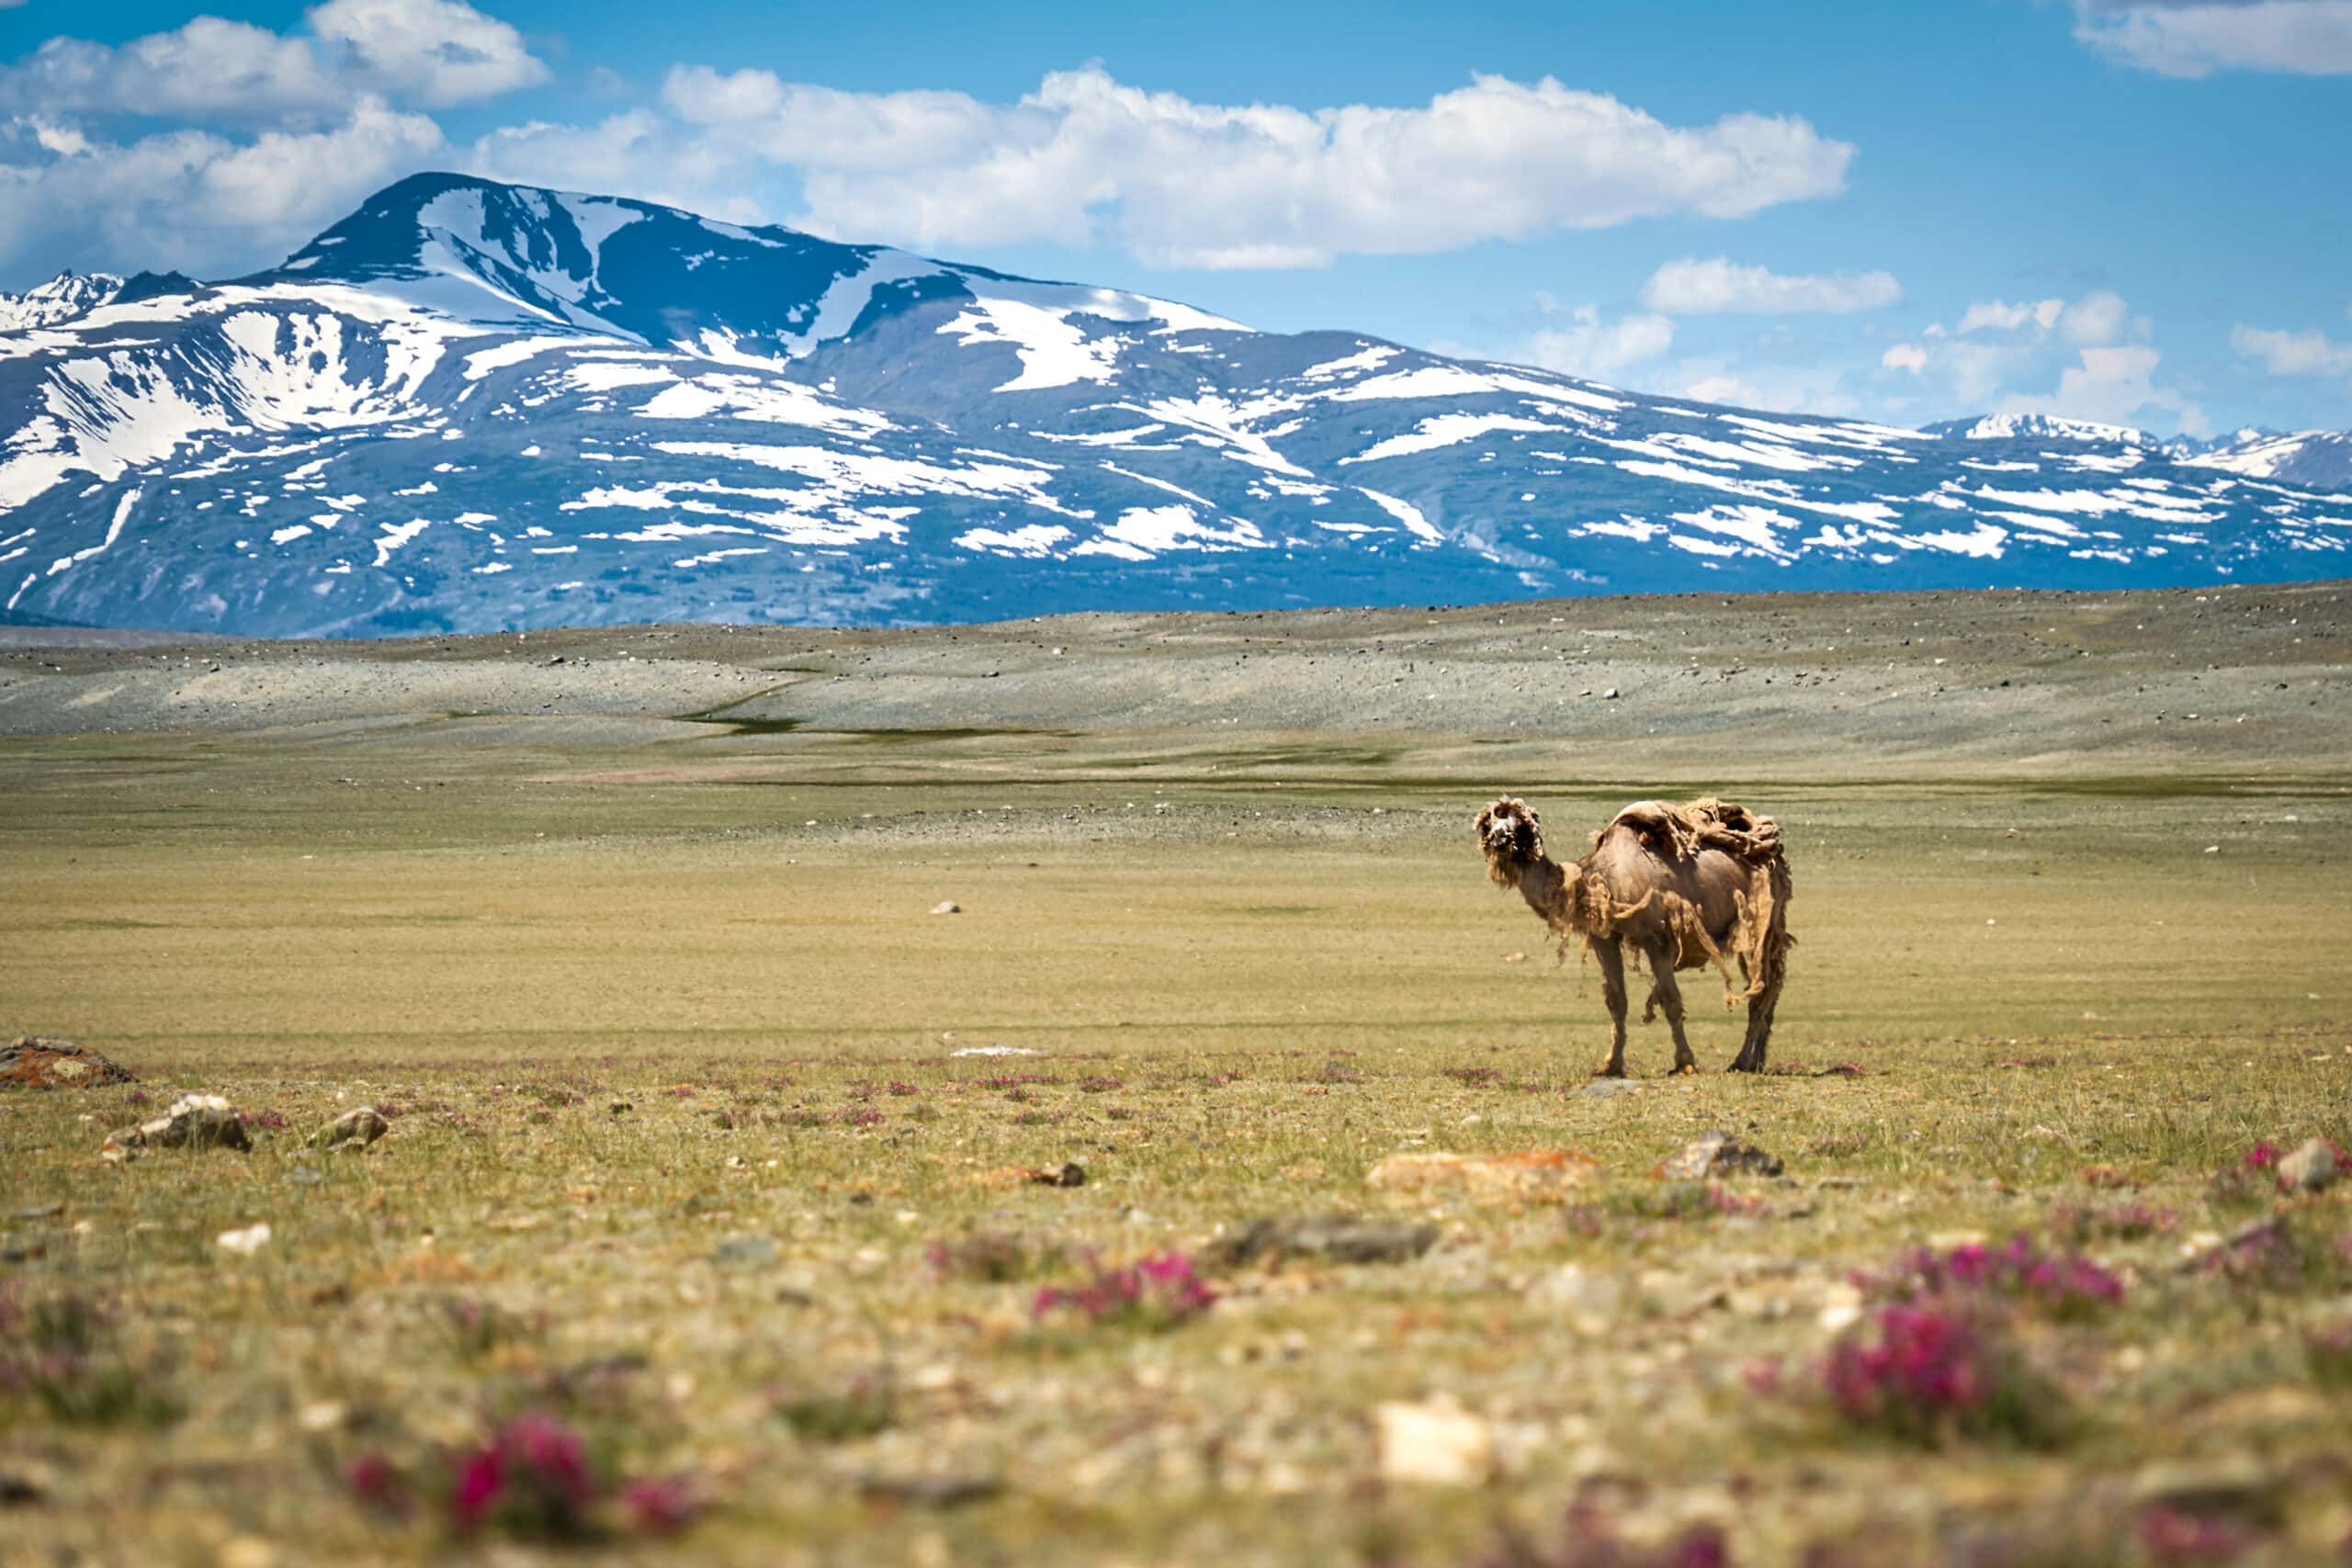 Ontdek de ongerepte natuur van Mongolië, hiken in een prachtig berggebied en meer over de cultuur leren.